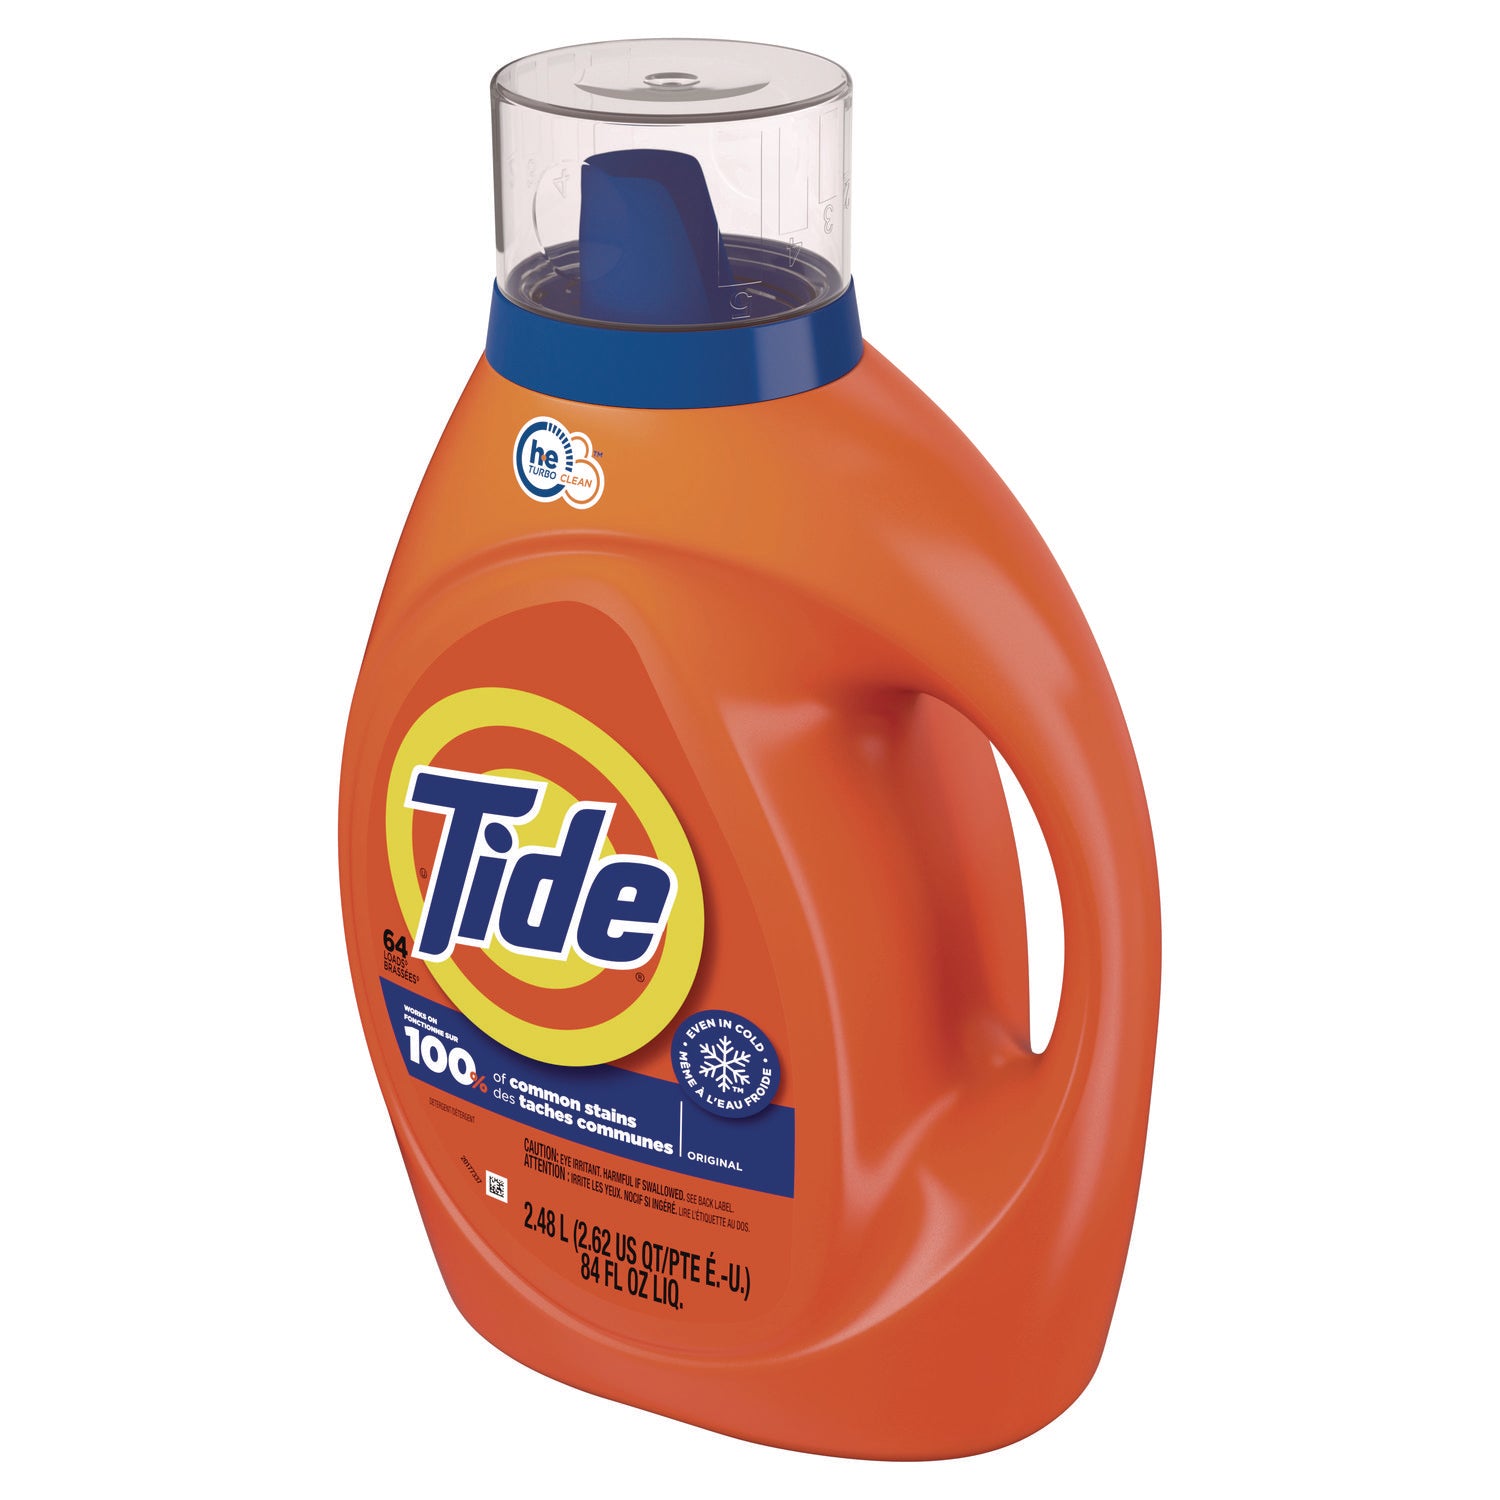 he-laundry-detergent-original-scent-liquid-64-loads-84-oz-bottle_pgc12110ea - 3